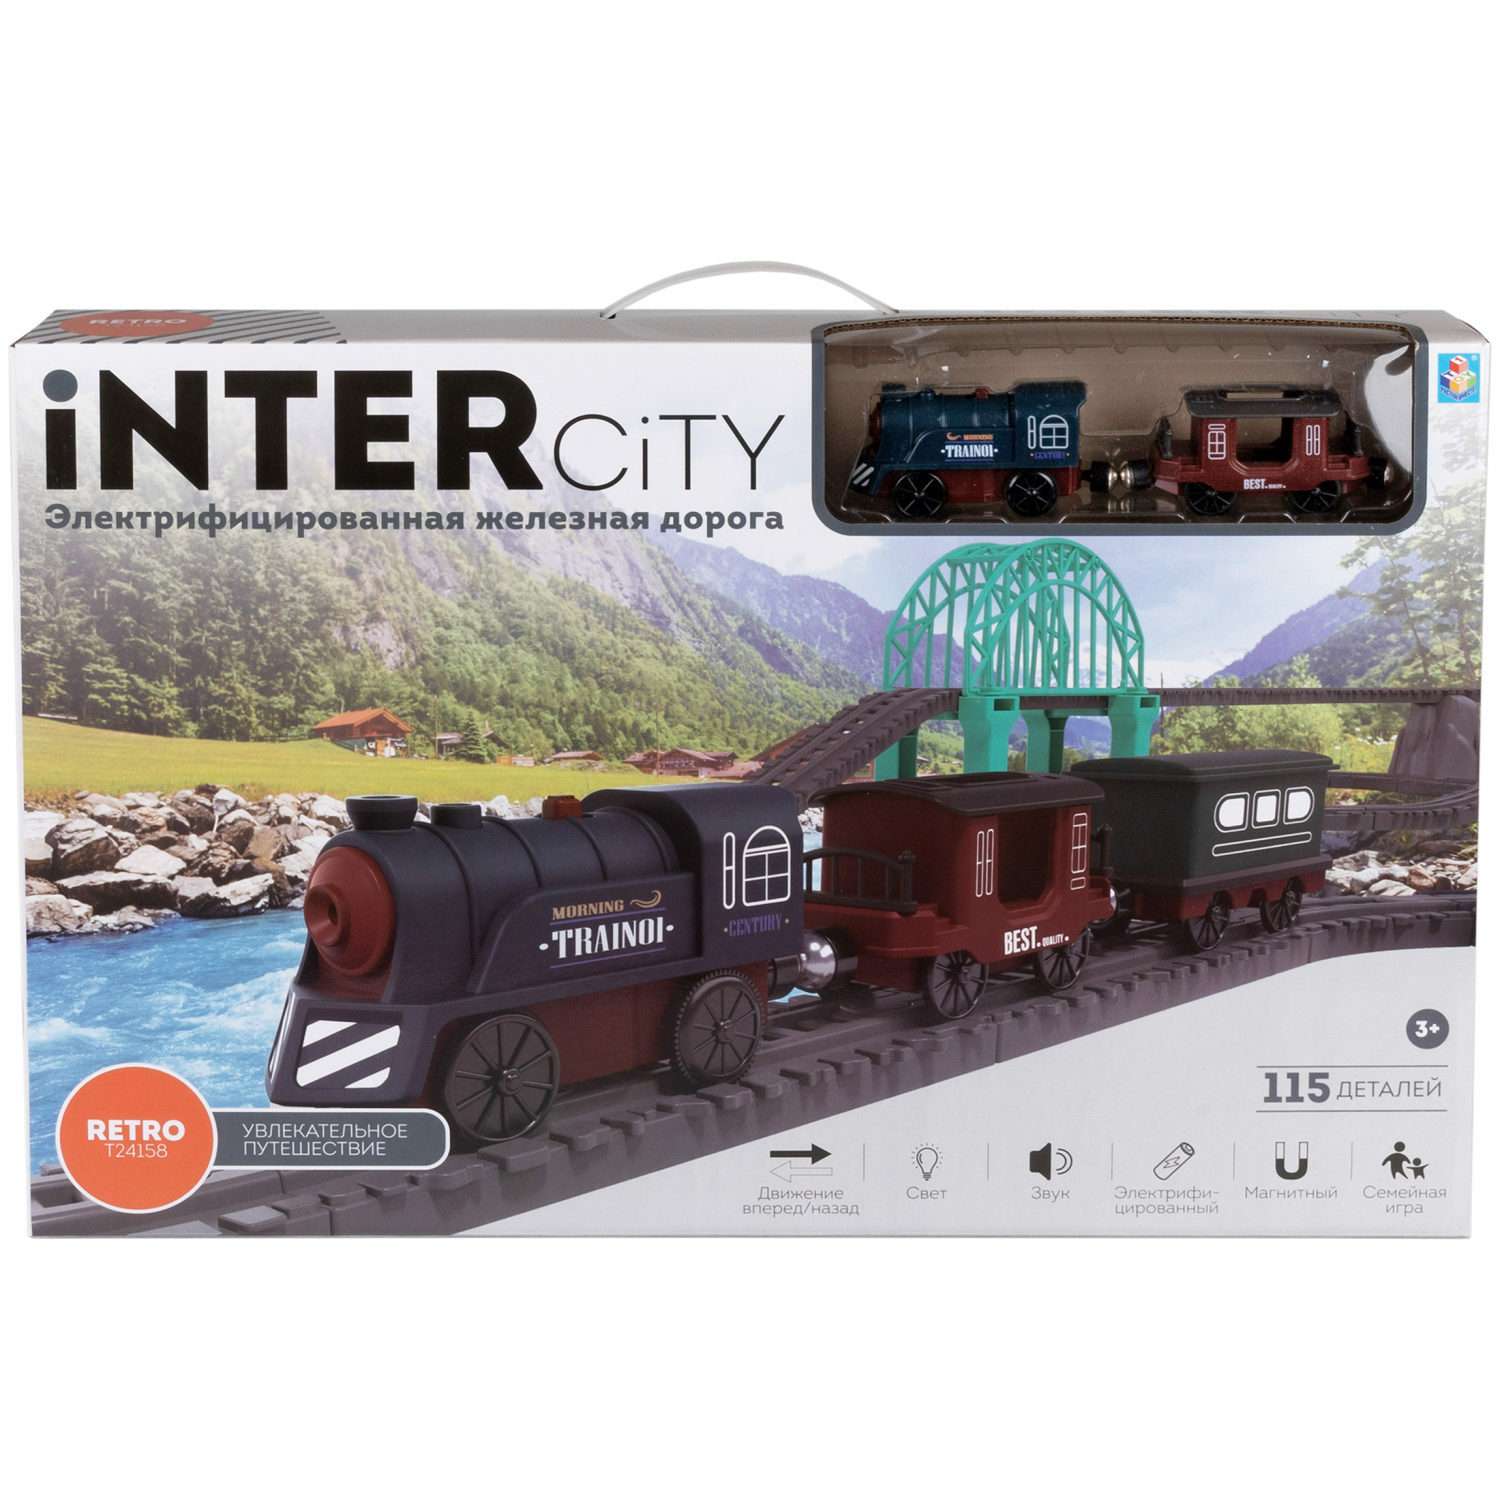 Игровой набор 1TOY InterCity Retro Железная дорога Увлекательное путешествие 115 деталей Т24158 - фото 2